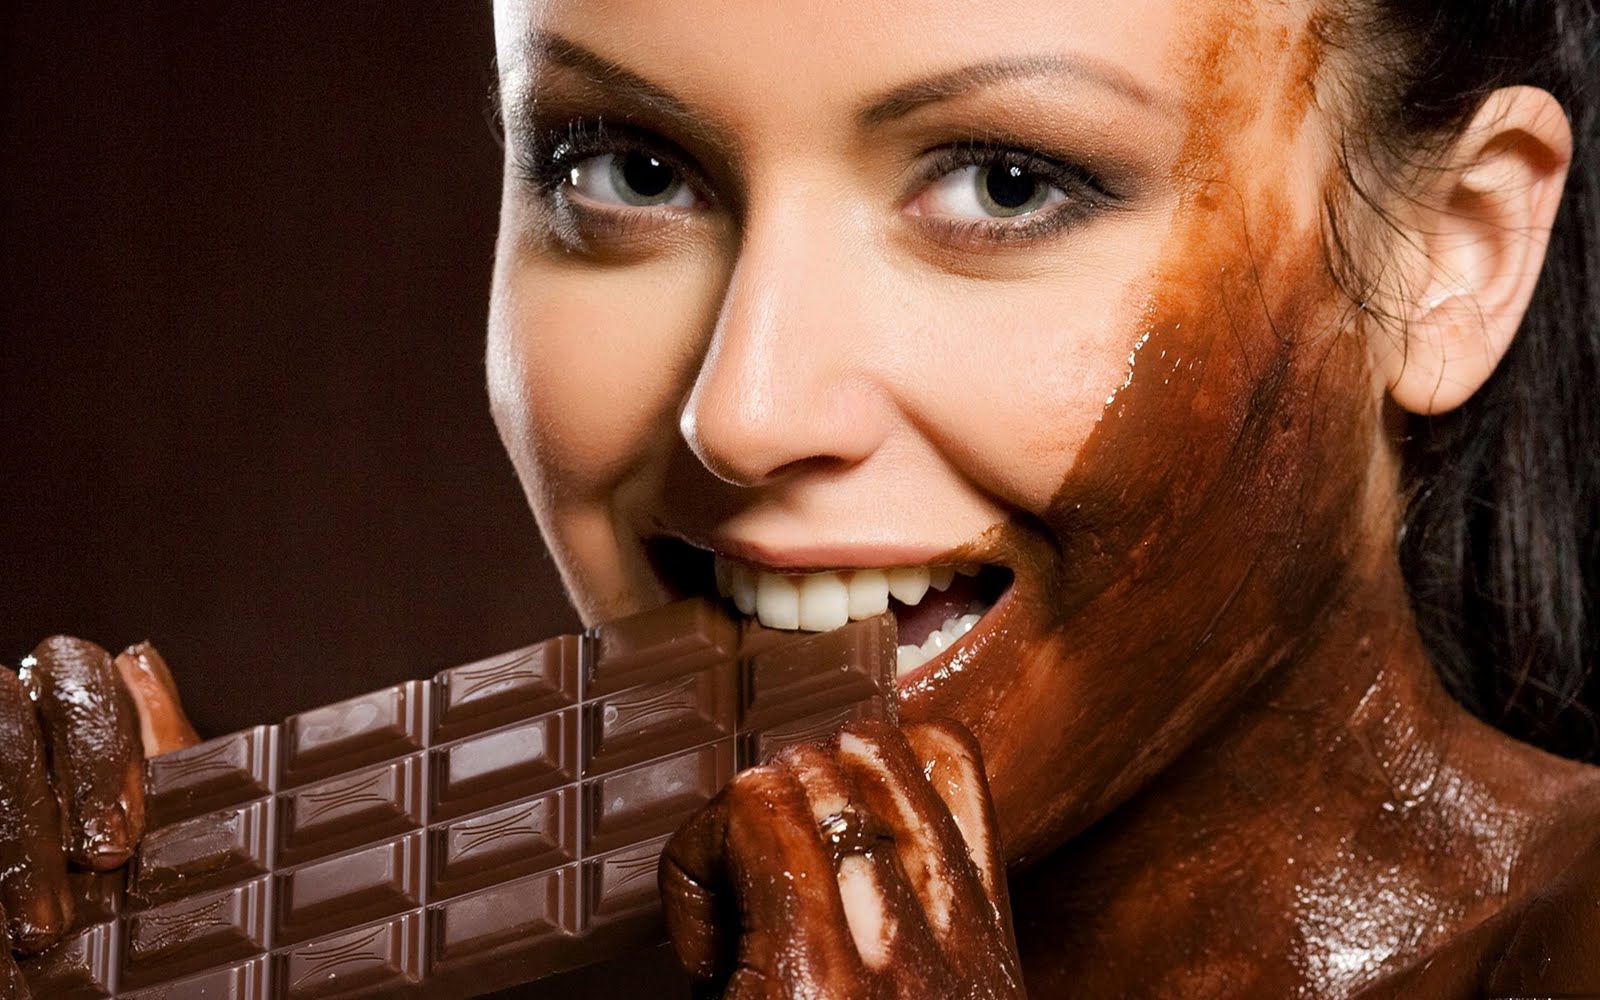 eating-chocolate-wallpapers.jpg